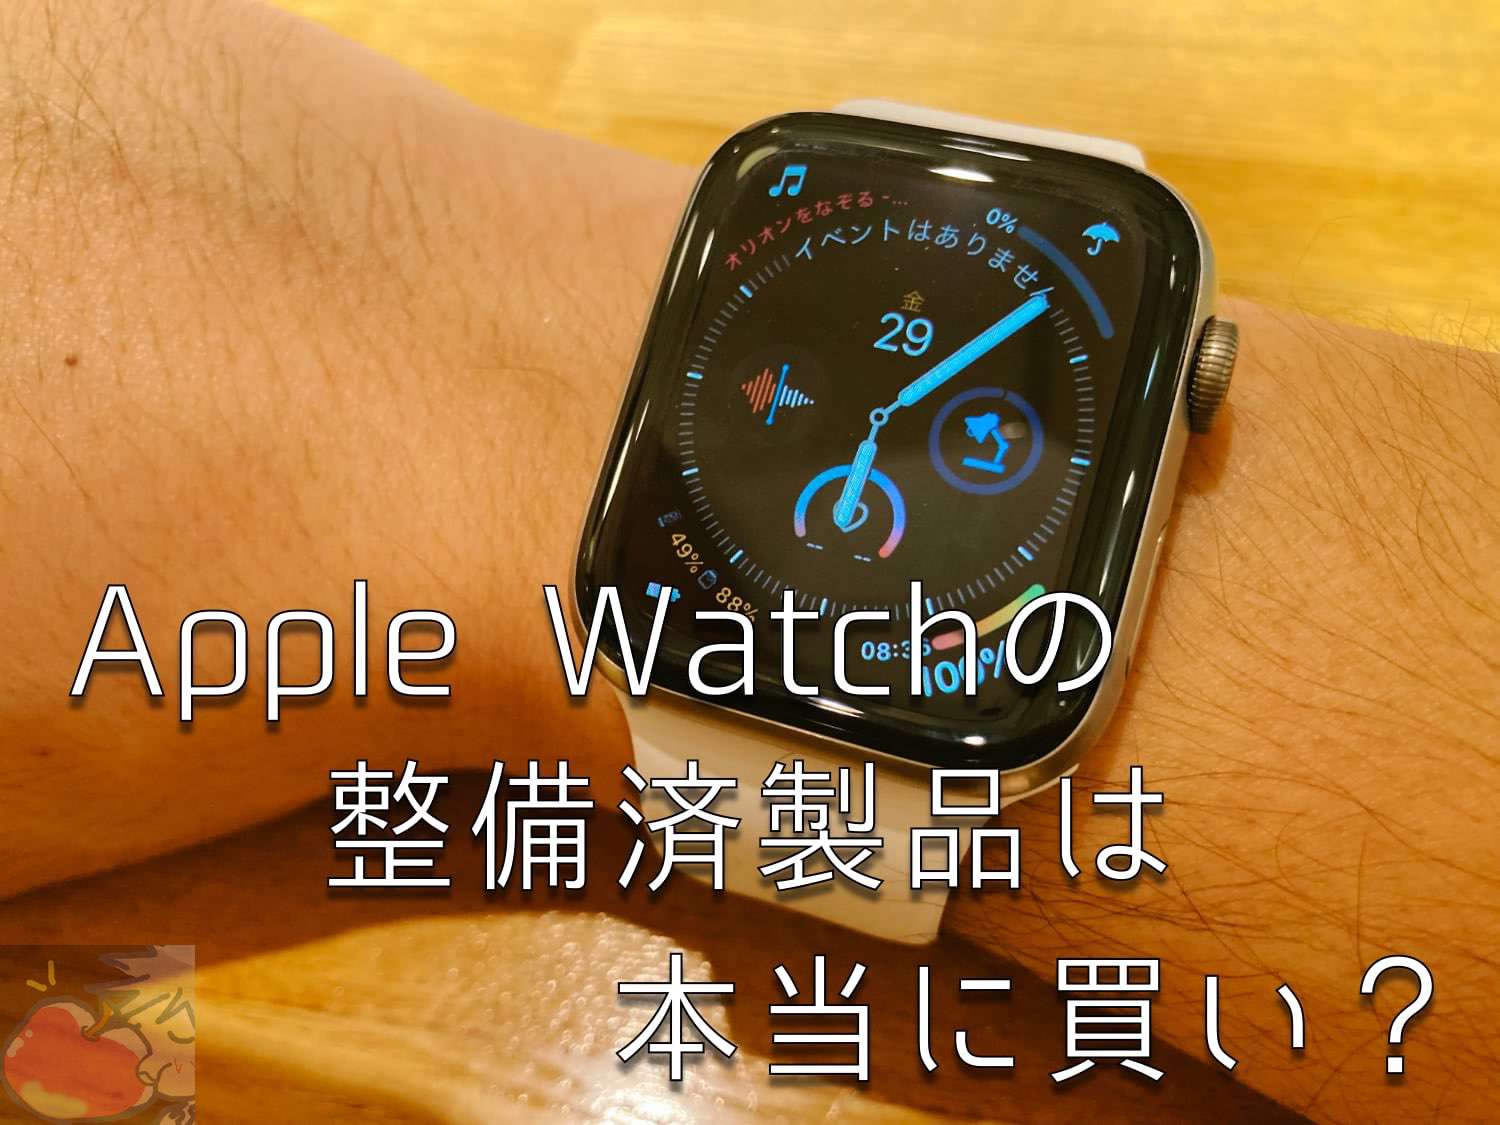 本当に買い？約15%割引のApple Watch整備済製品をおすすめしたい機能的な理由